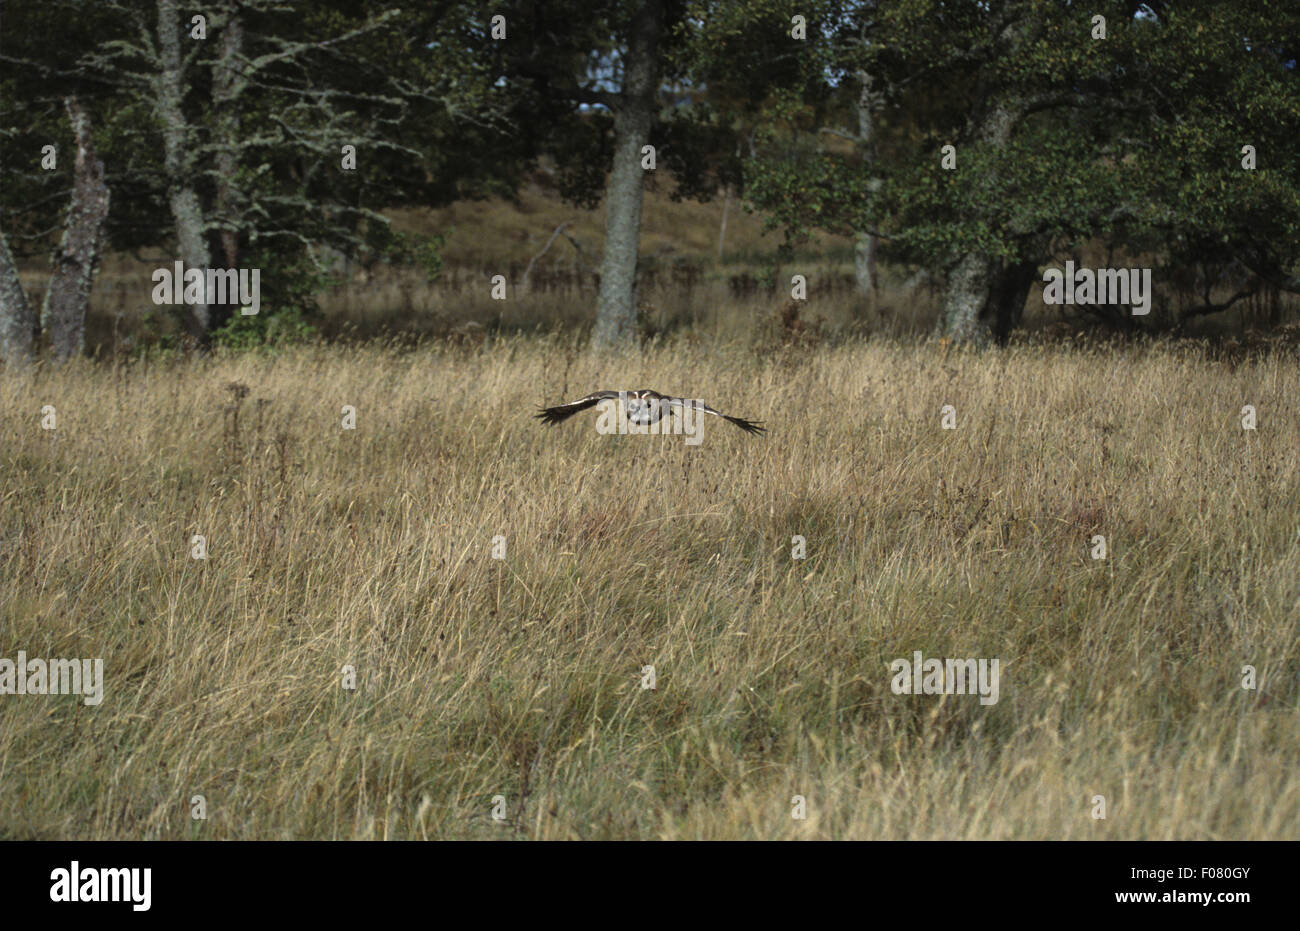 Chouette hulotte vol captif basse vers l'appareil photo sur un terrain envahi en face de Woodland Banque D'Images